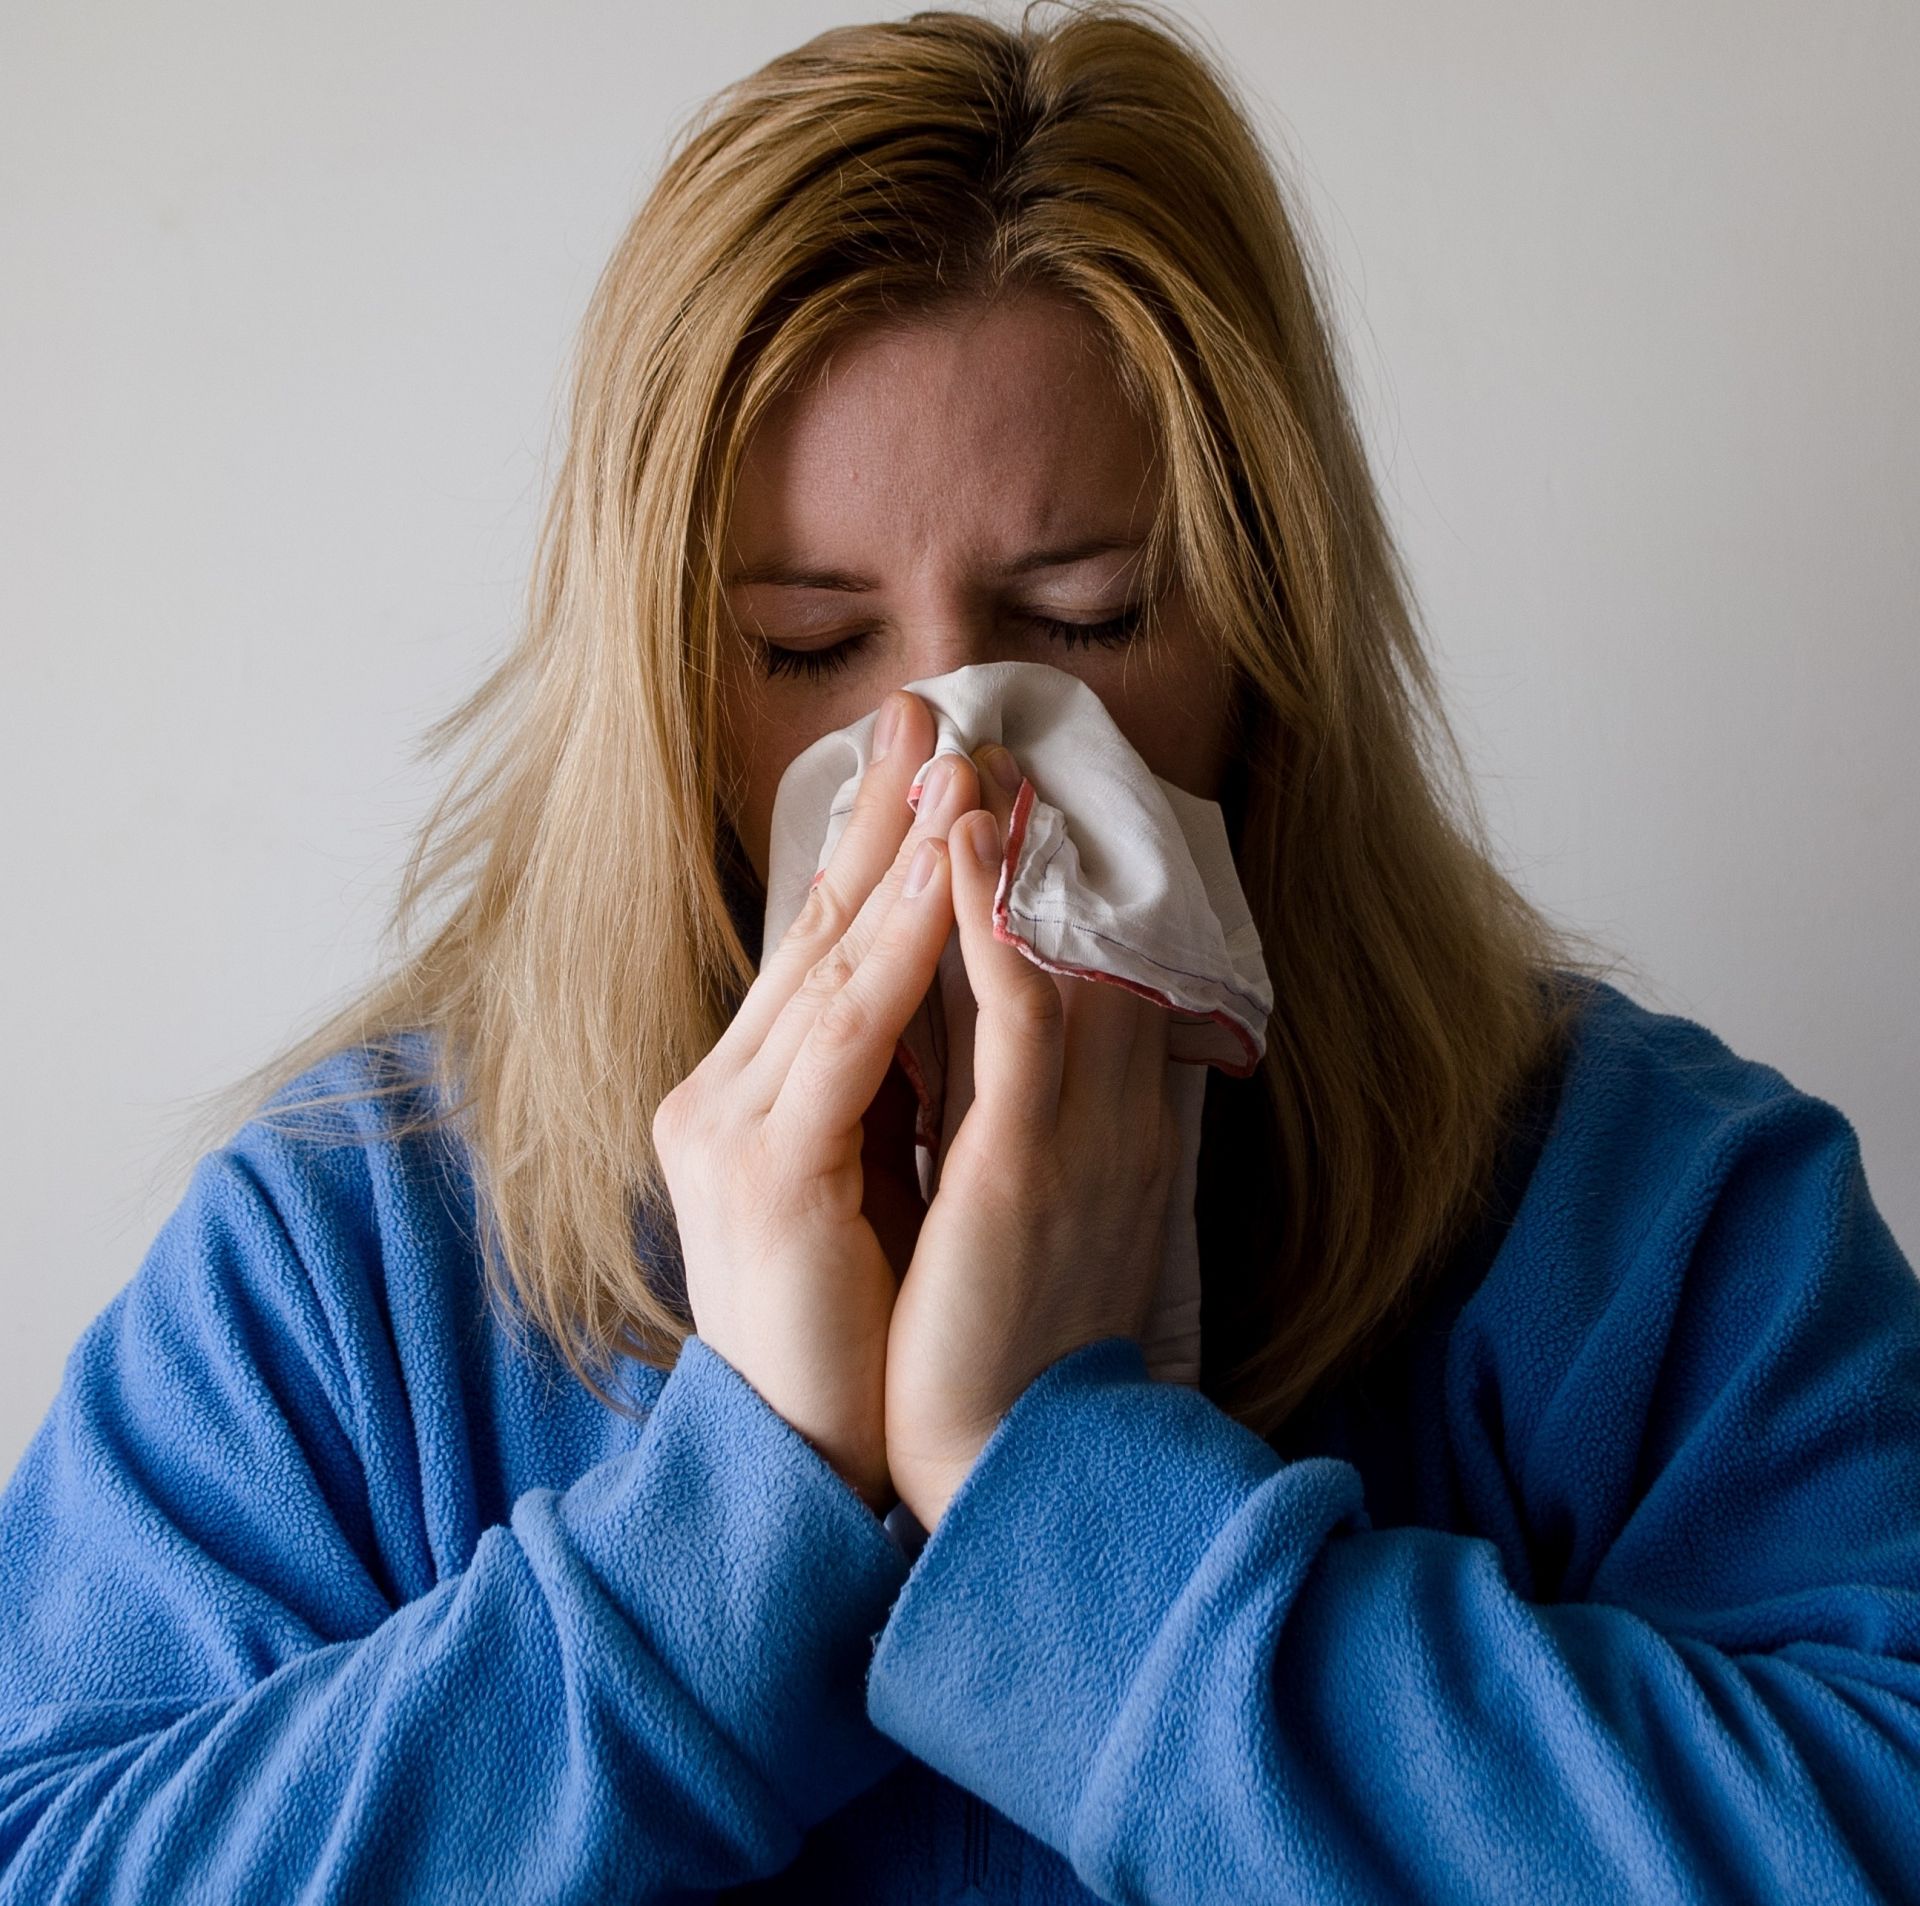 ОРЗ, грипп и коронавирус: чем сегодня болеют челнинцы